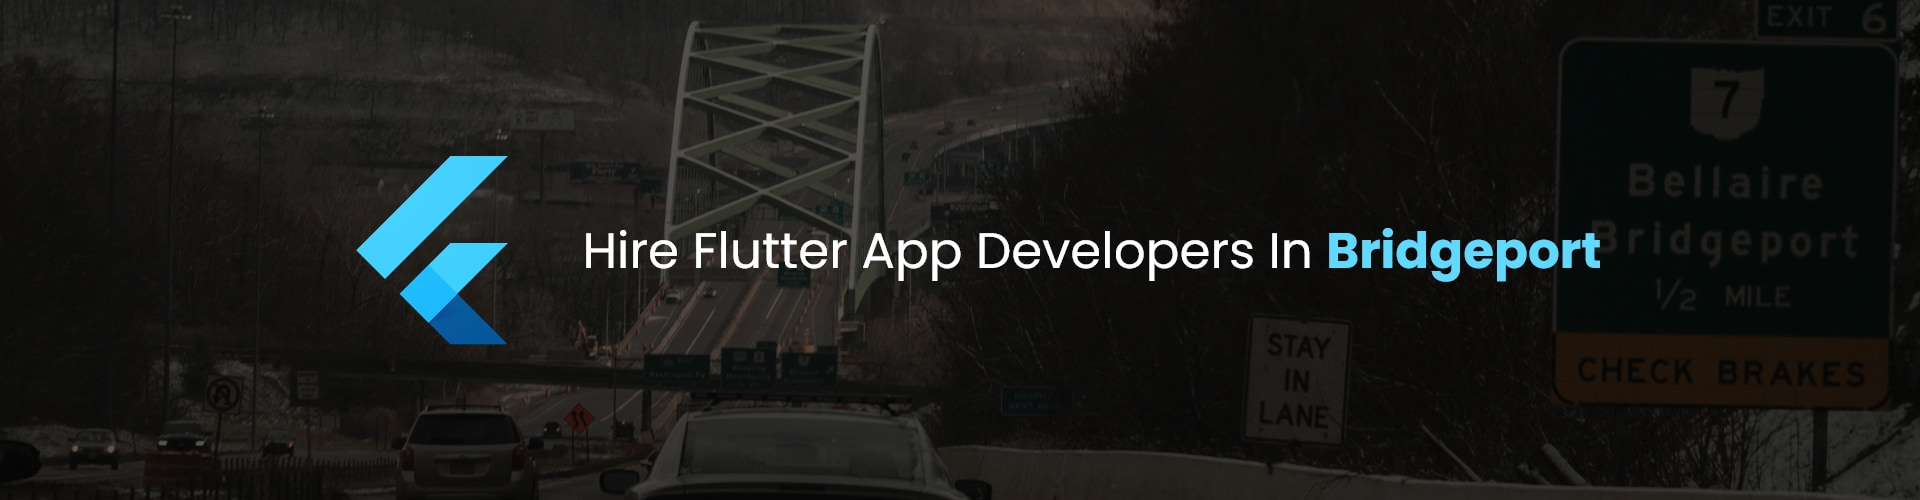 hire flutter app developers in bridgeport